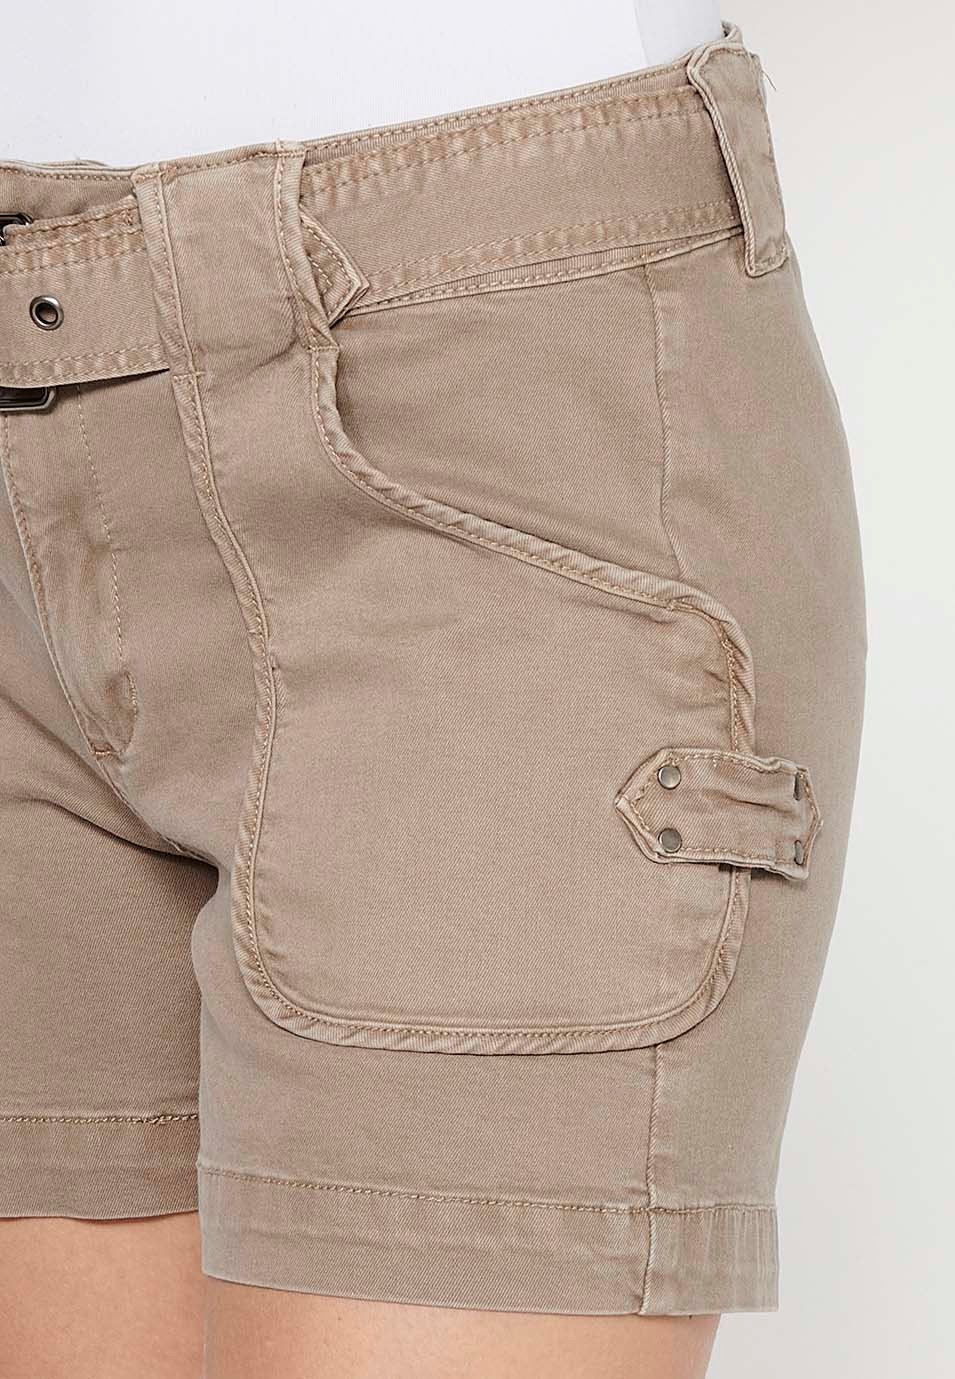 Beigefarbene Shorts mit Gürtel an der Taille und aufgesetzten Taschen für Damen